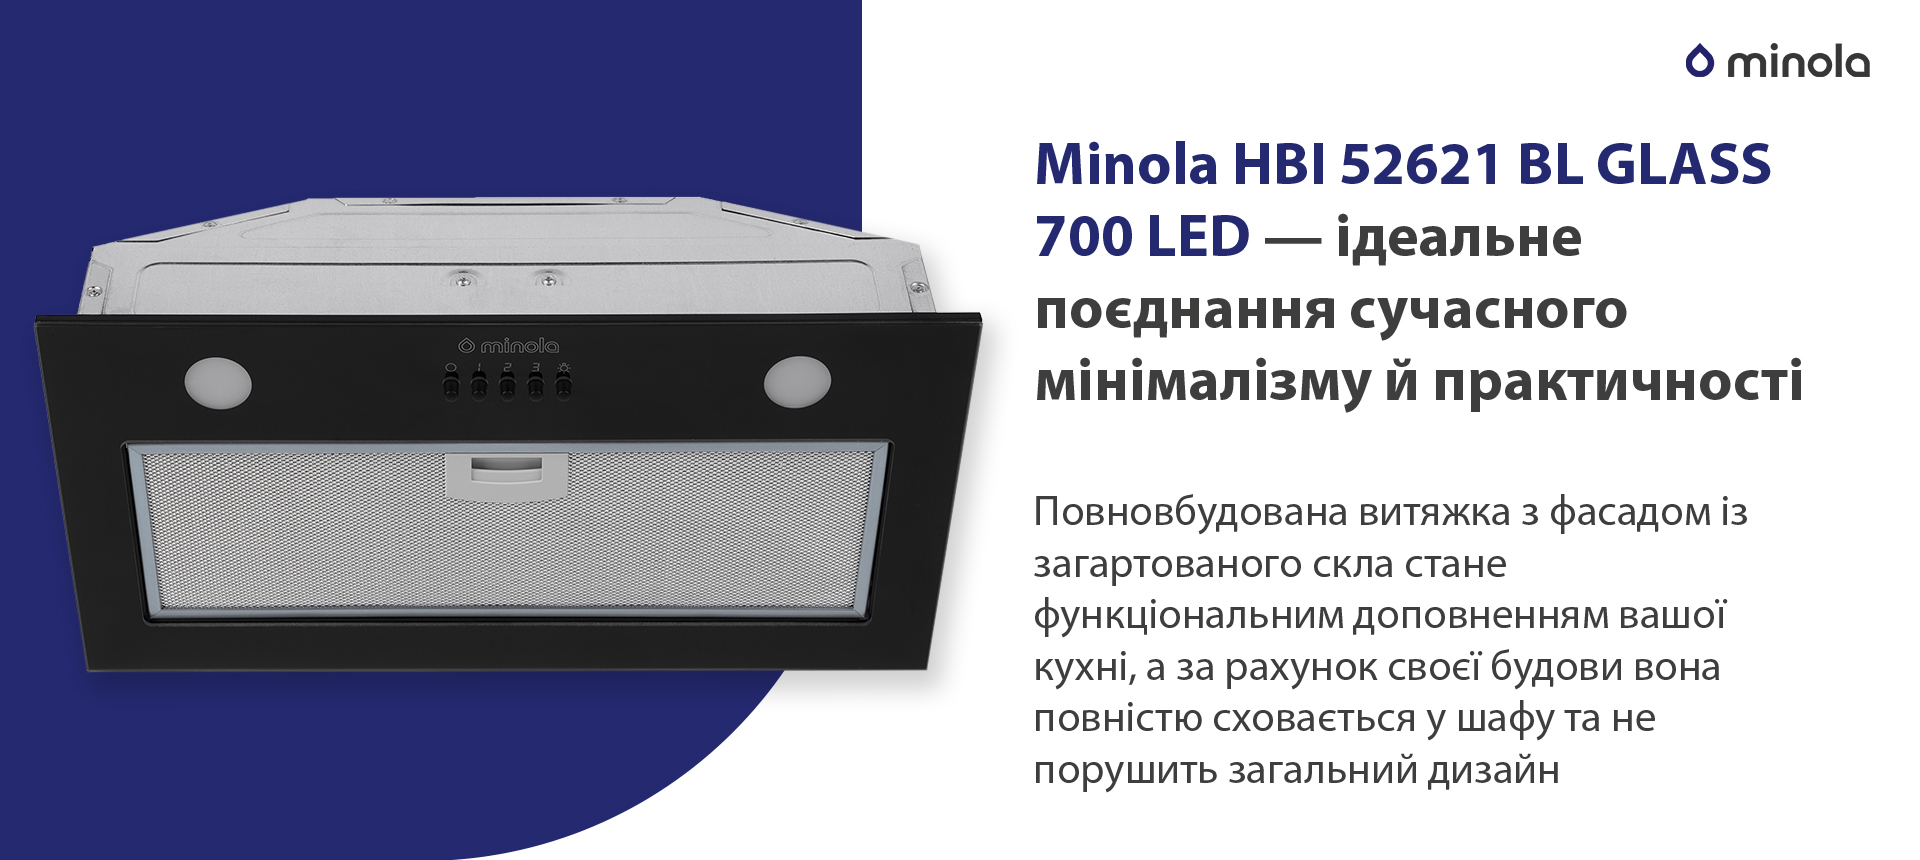 Minola HBI 52621 BL GLASS 700 LED в магазине в Киеве - фото 10